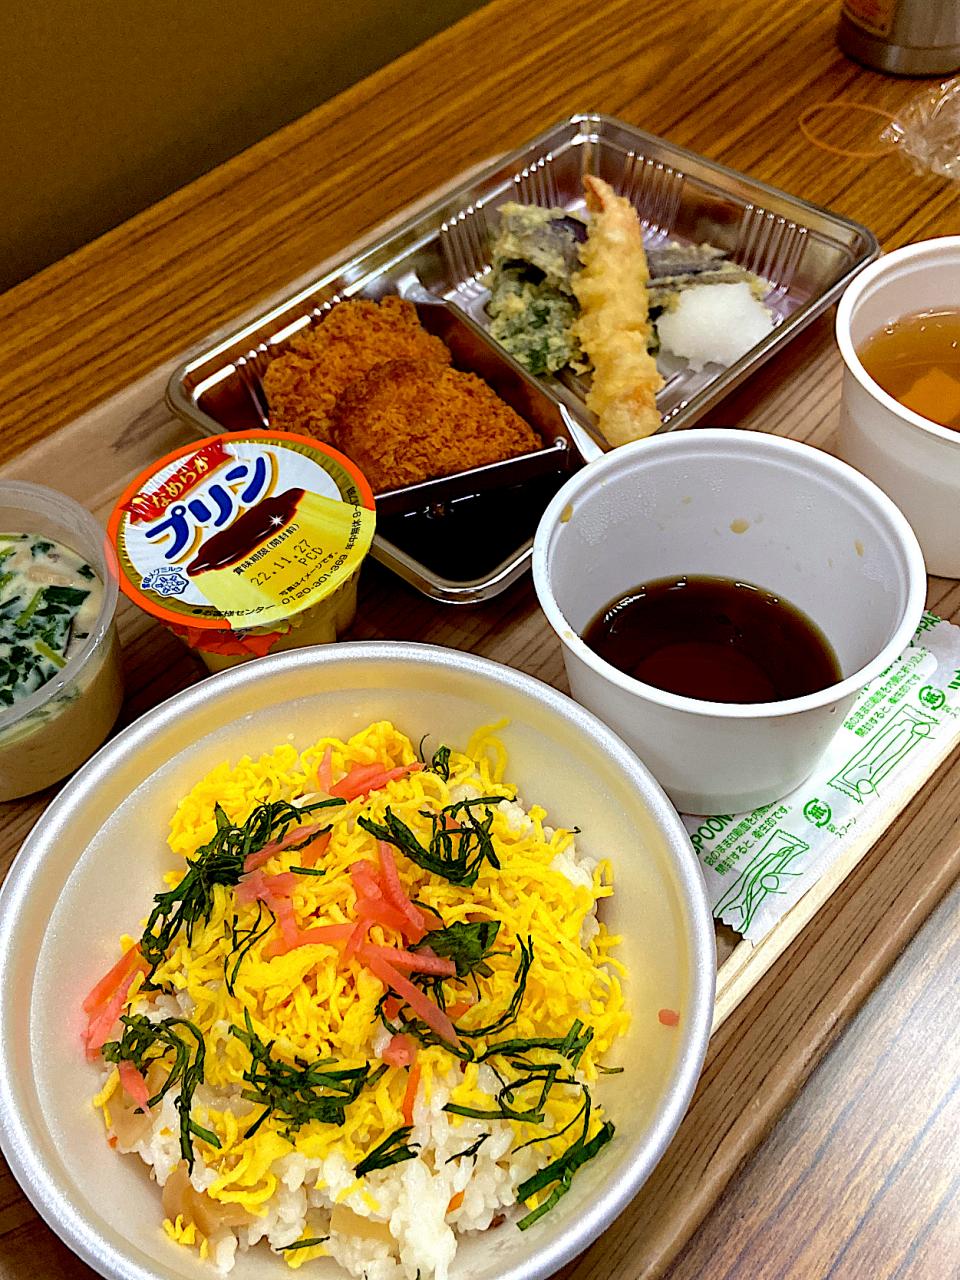 社食。300円。チラシ寿司、天麩羅など。